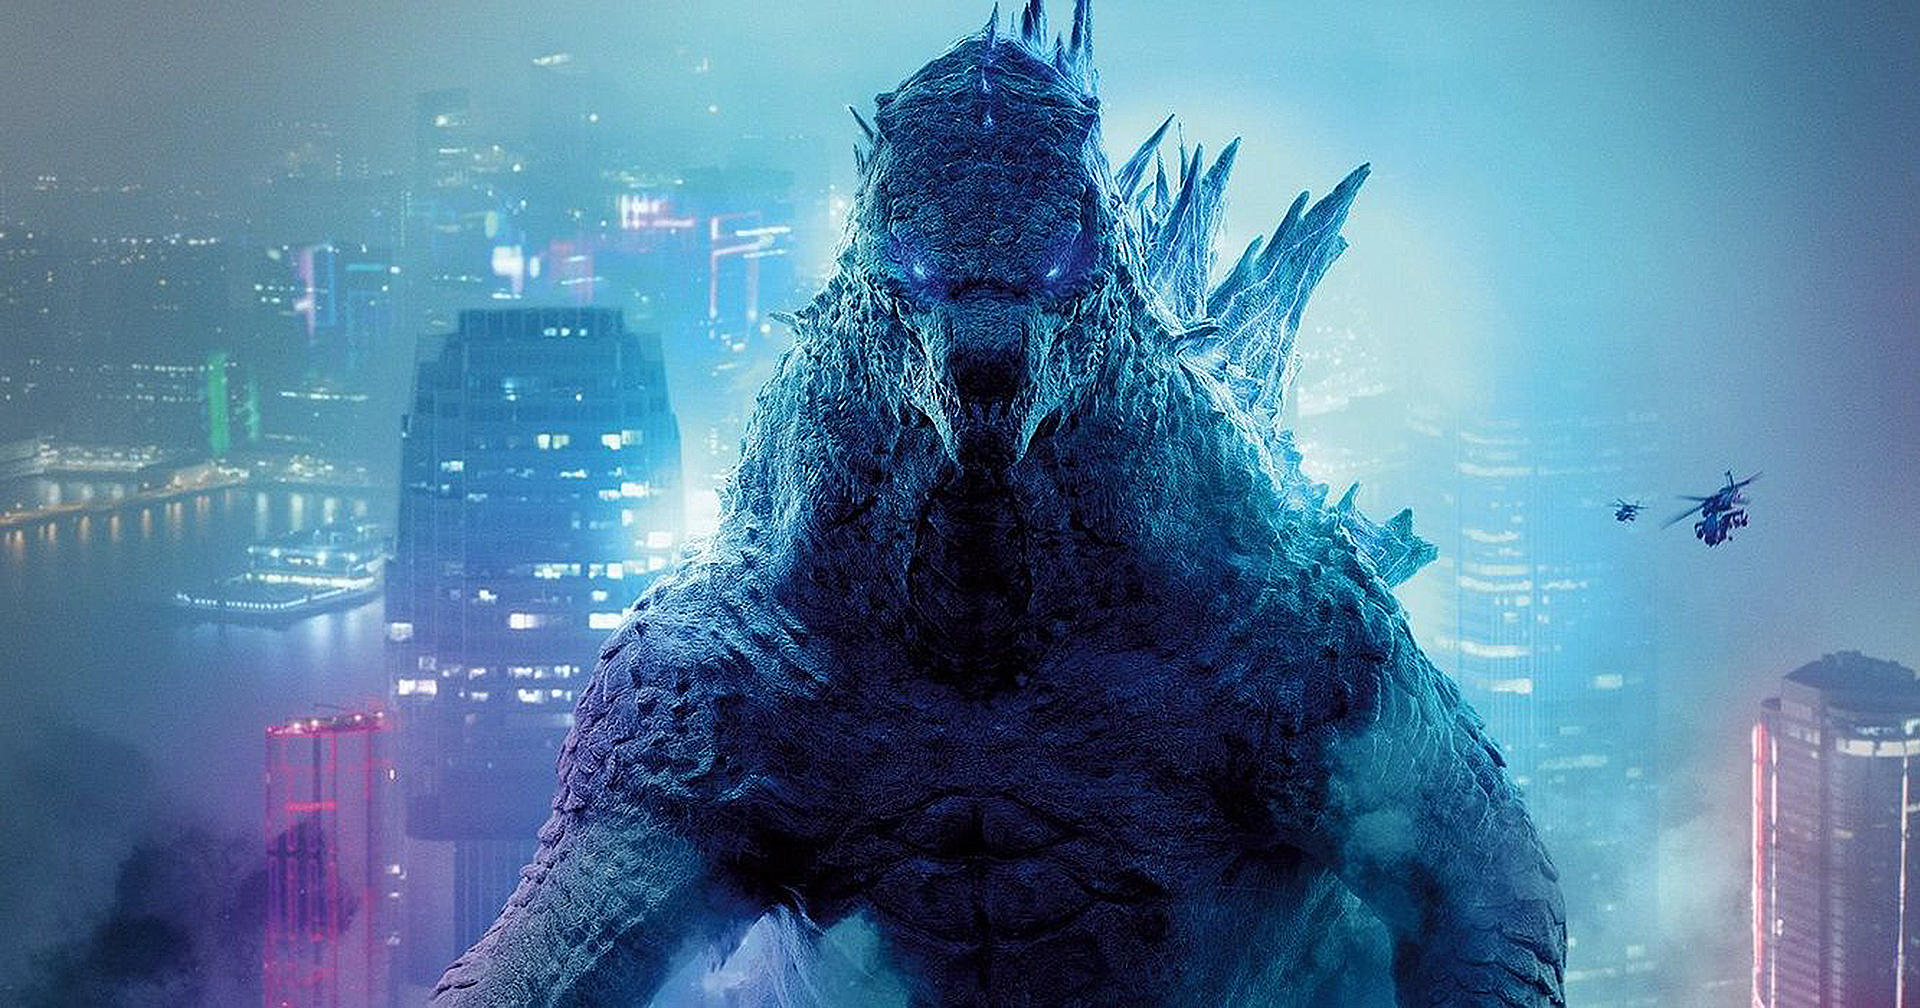 Godzilla vs Kong ทำรายได้เปิดตัววันแรกในสหรัฐฯ ได้สูงสุดนับตั้งแต่เดือนมีนาคม 2020 เป็นต้นมา